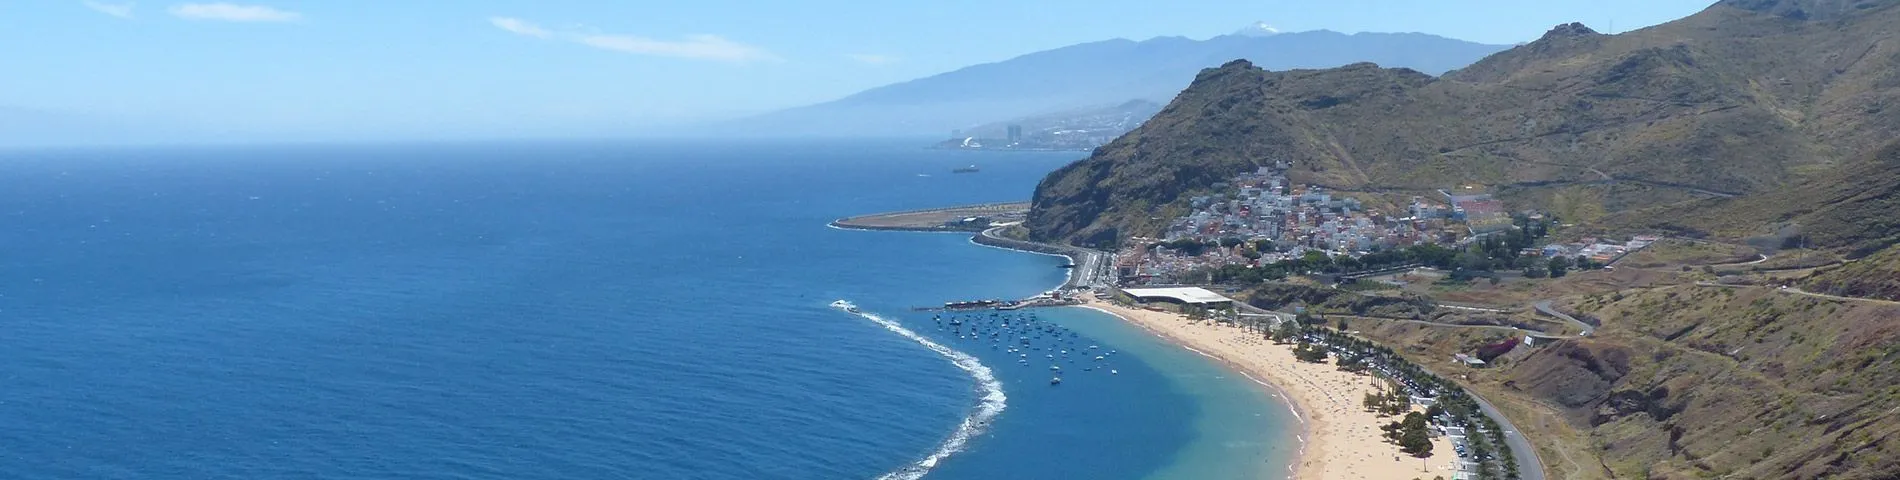 Tenerife - Všoebecný